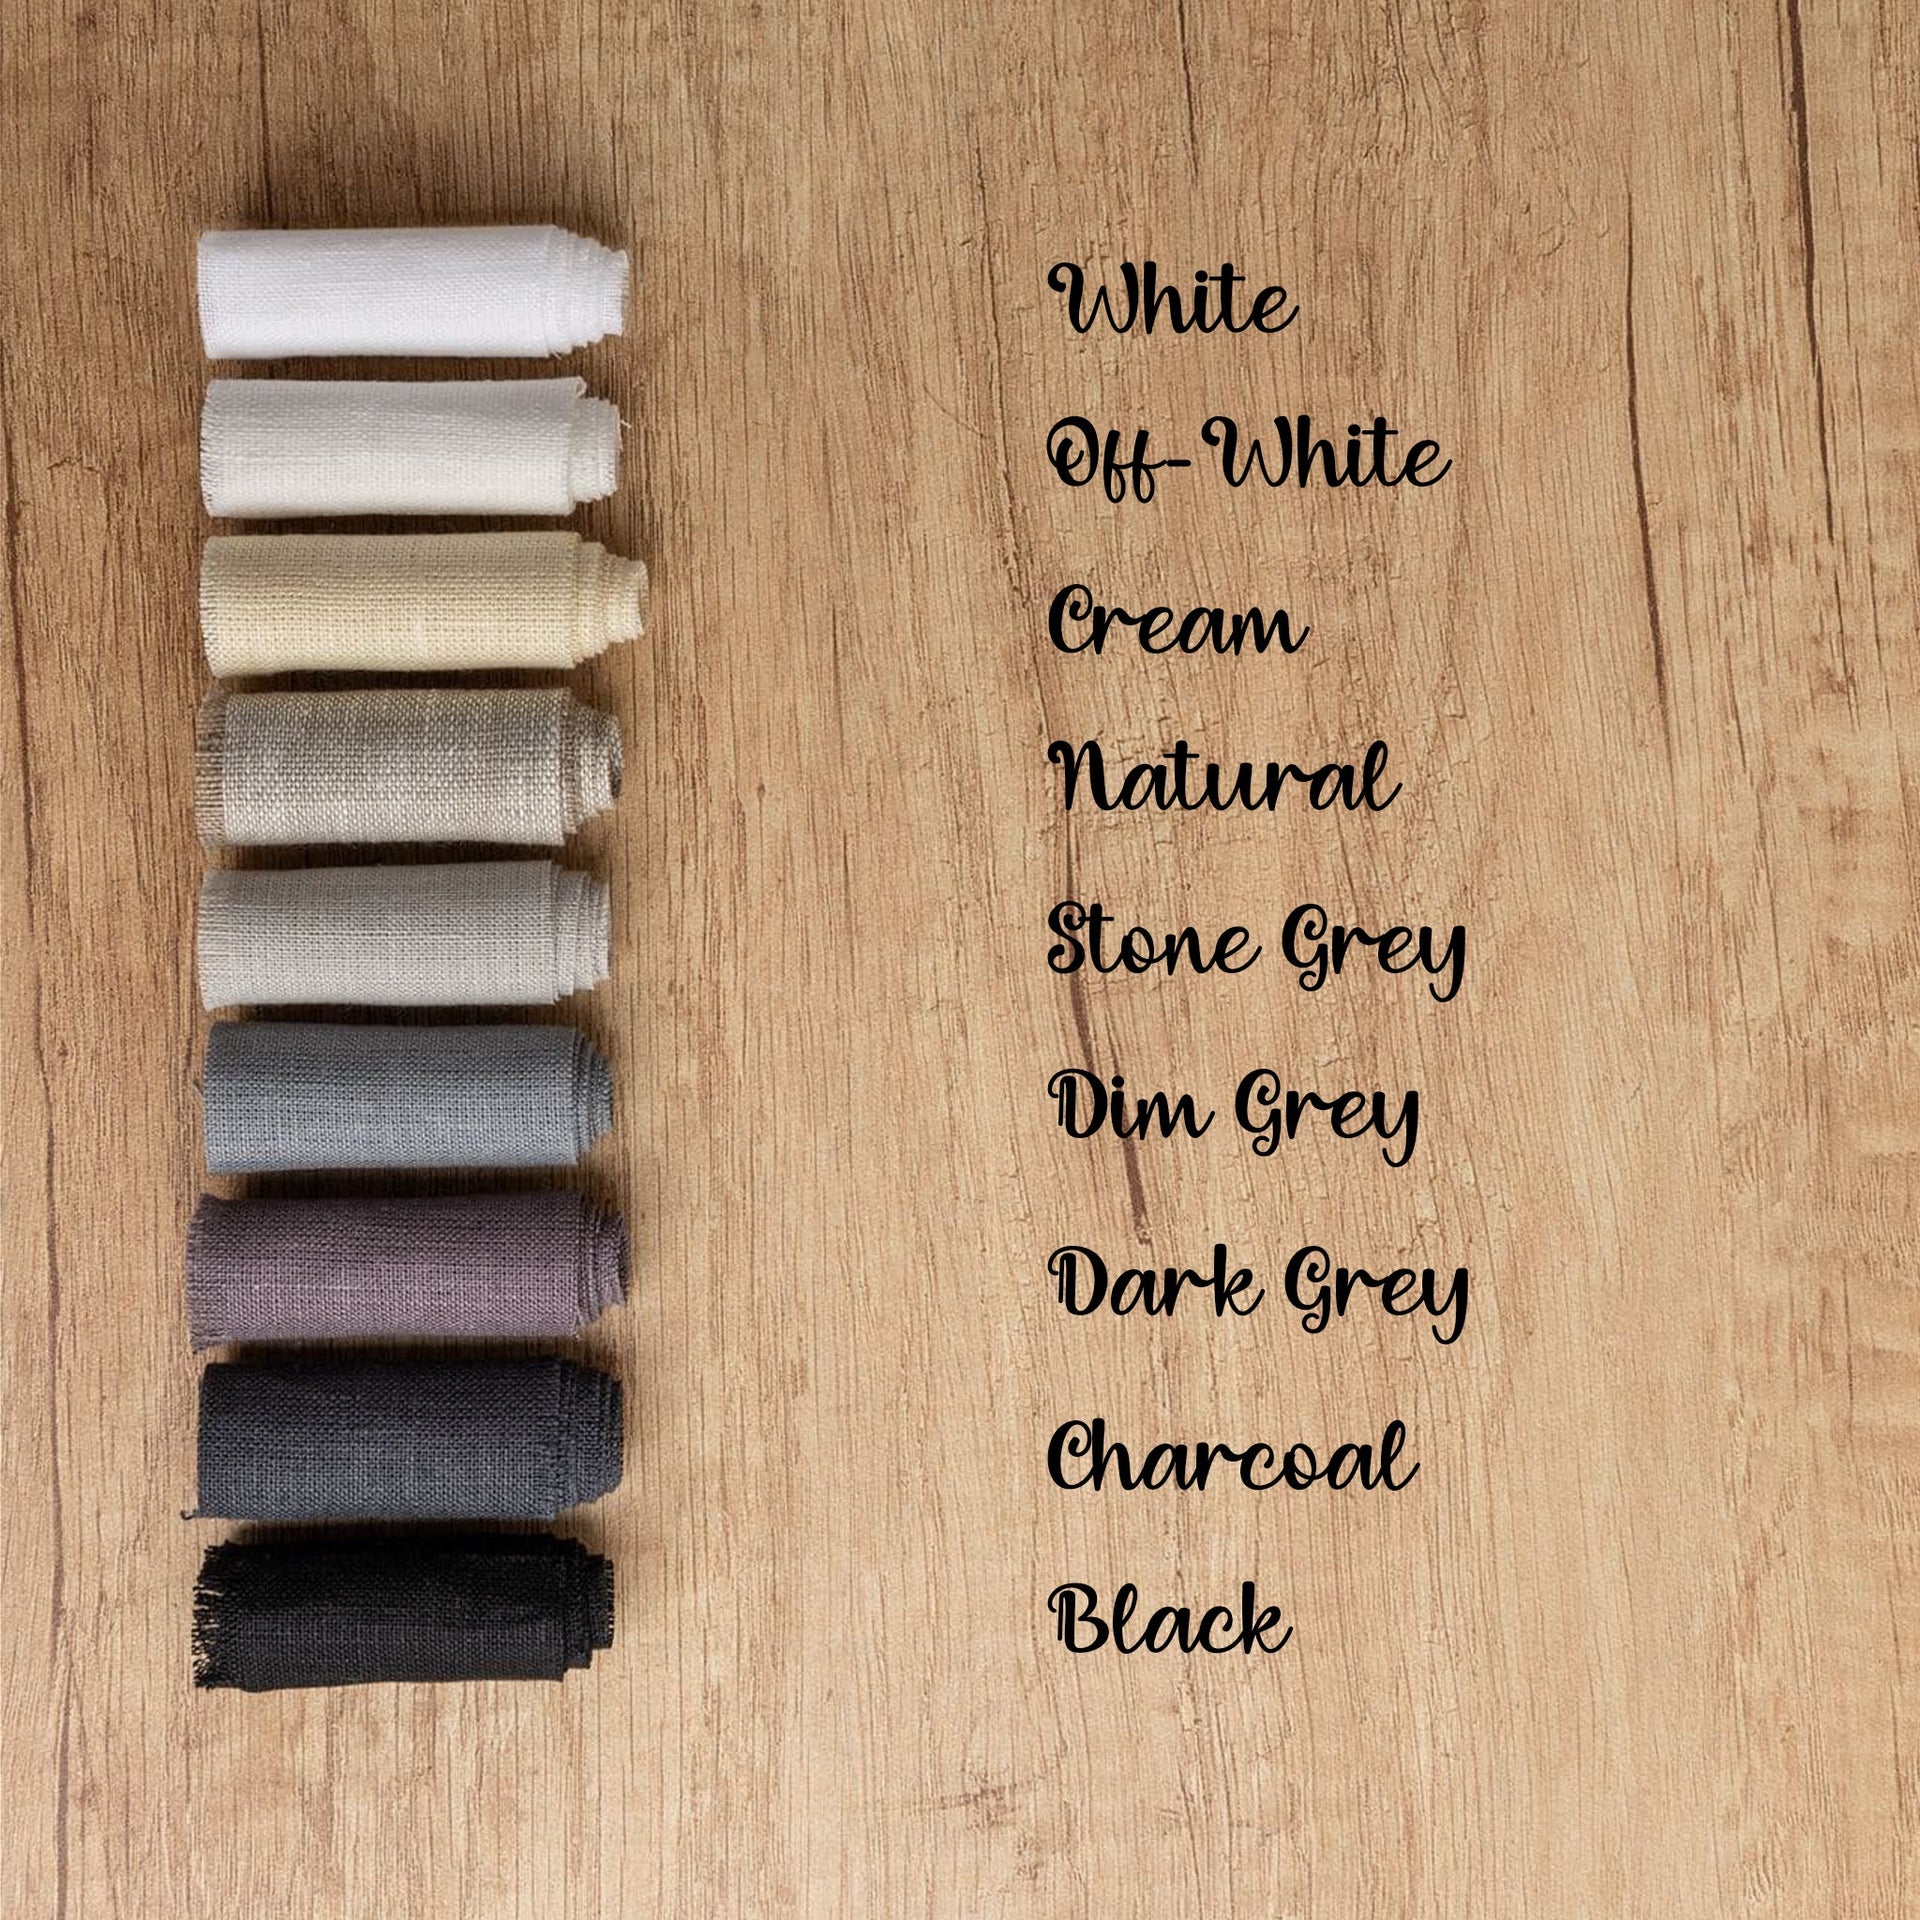 @ color:Stone Grey, color:Dim Grey, color:Black, color:Dark Grey, color:White, color:Off-White, color:Cream, color:Natural, color:Dark Grey, color:Charcoal